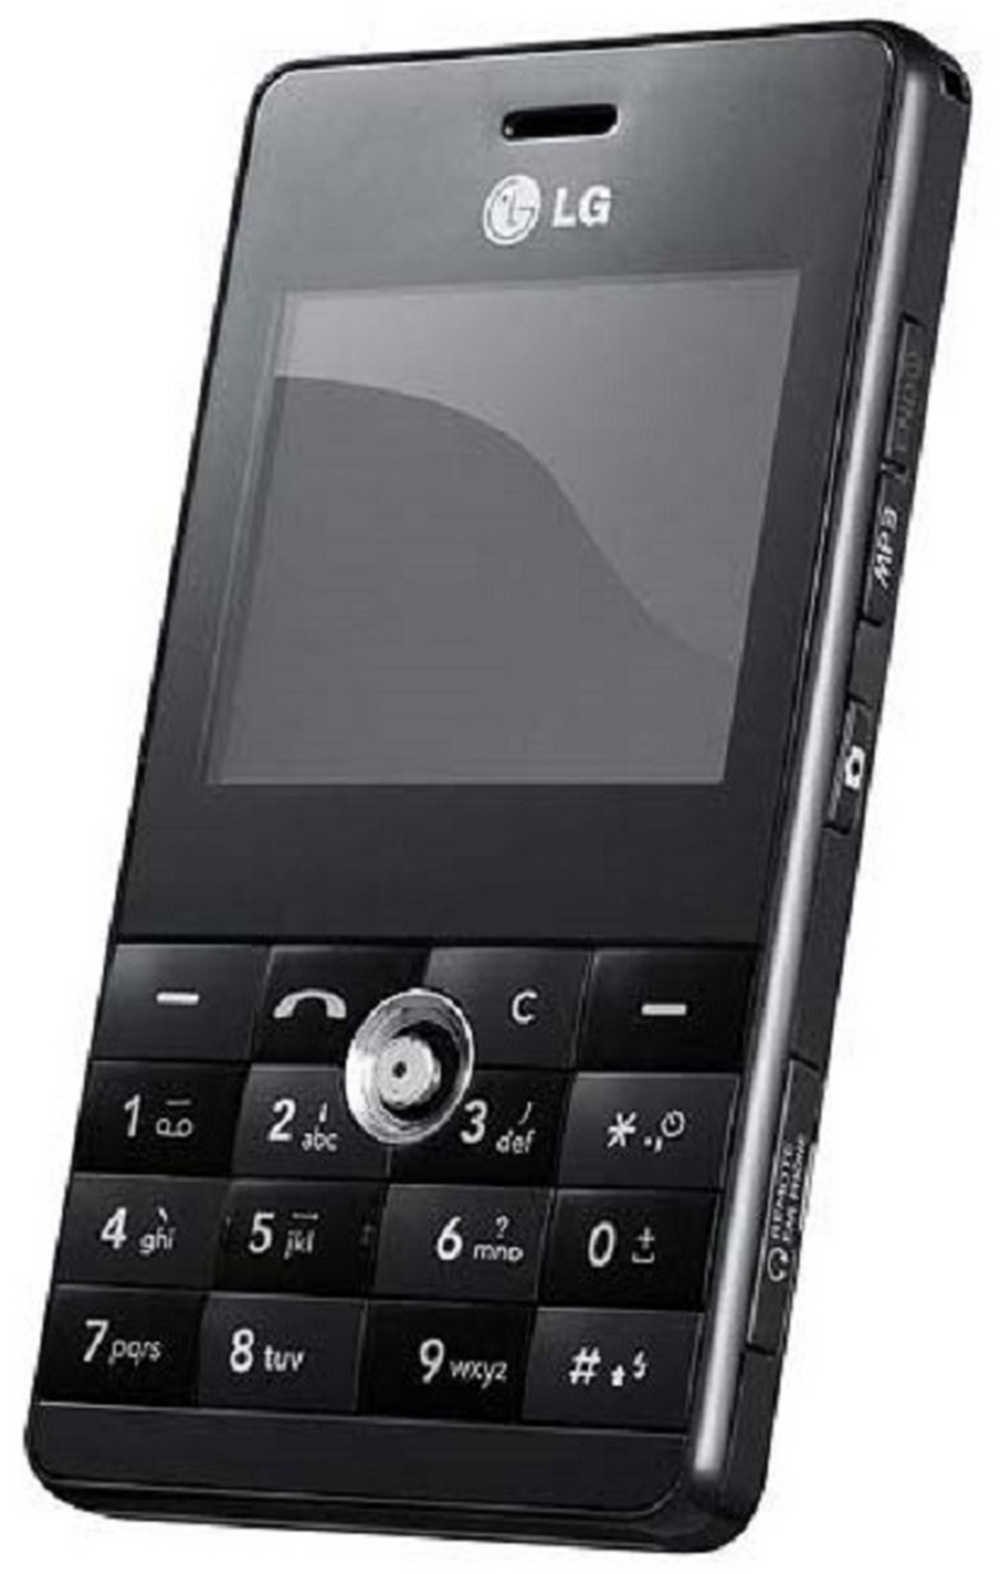 LG ke820. LG ce0168. Телефон LG 2006. Моторола се 0168.